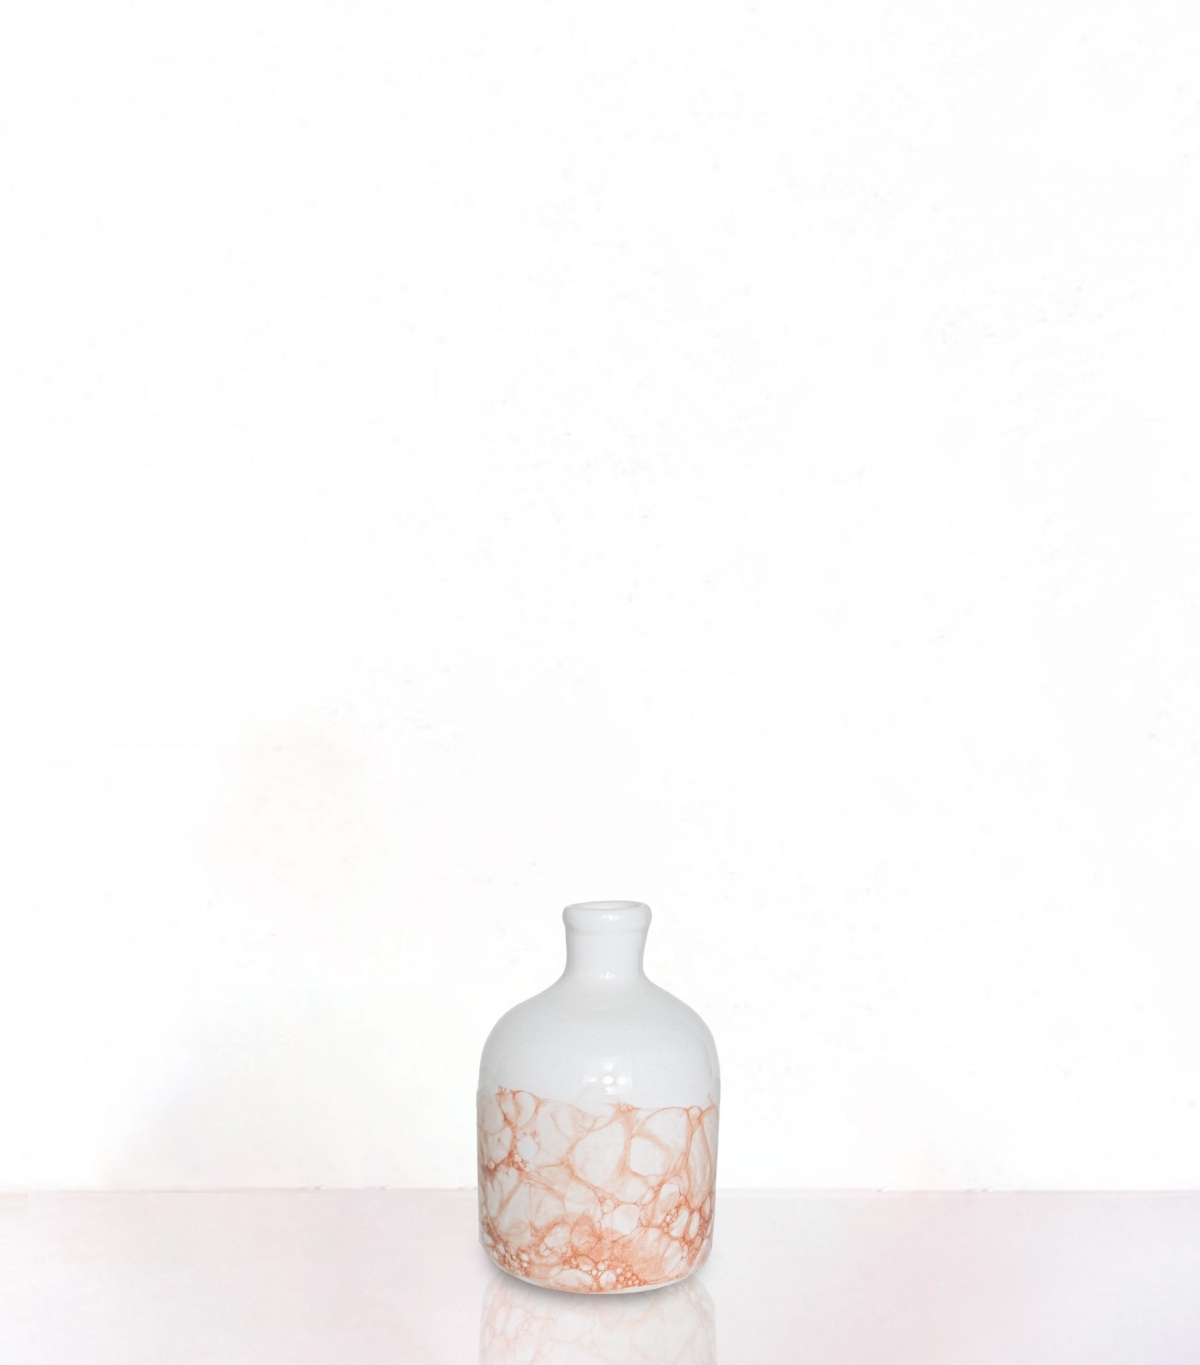 Red small ceramic vase